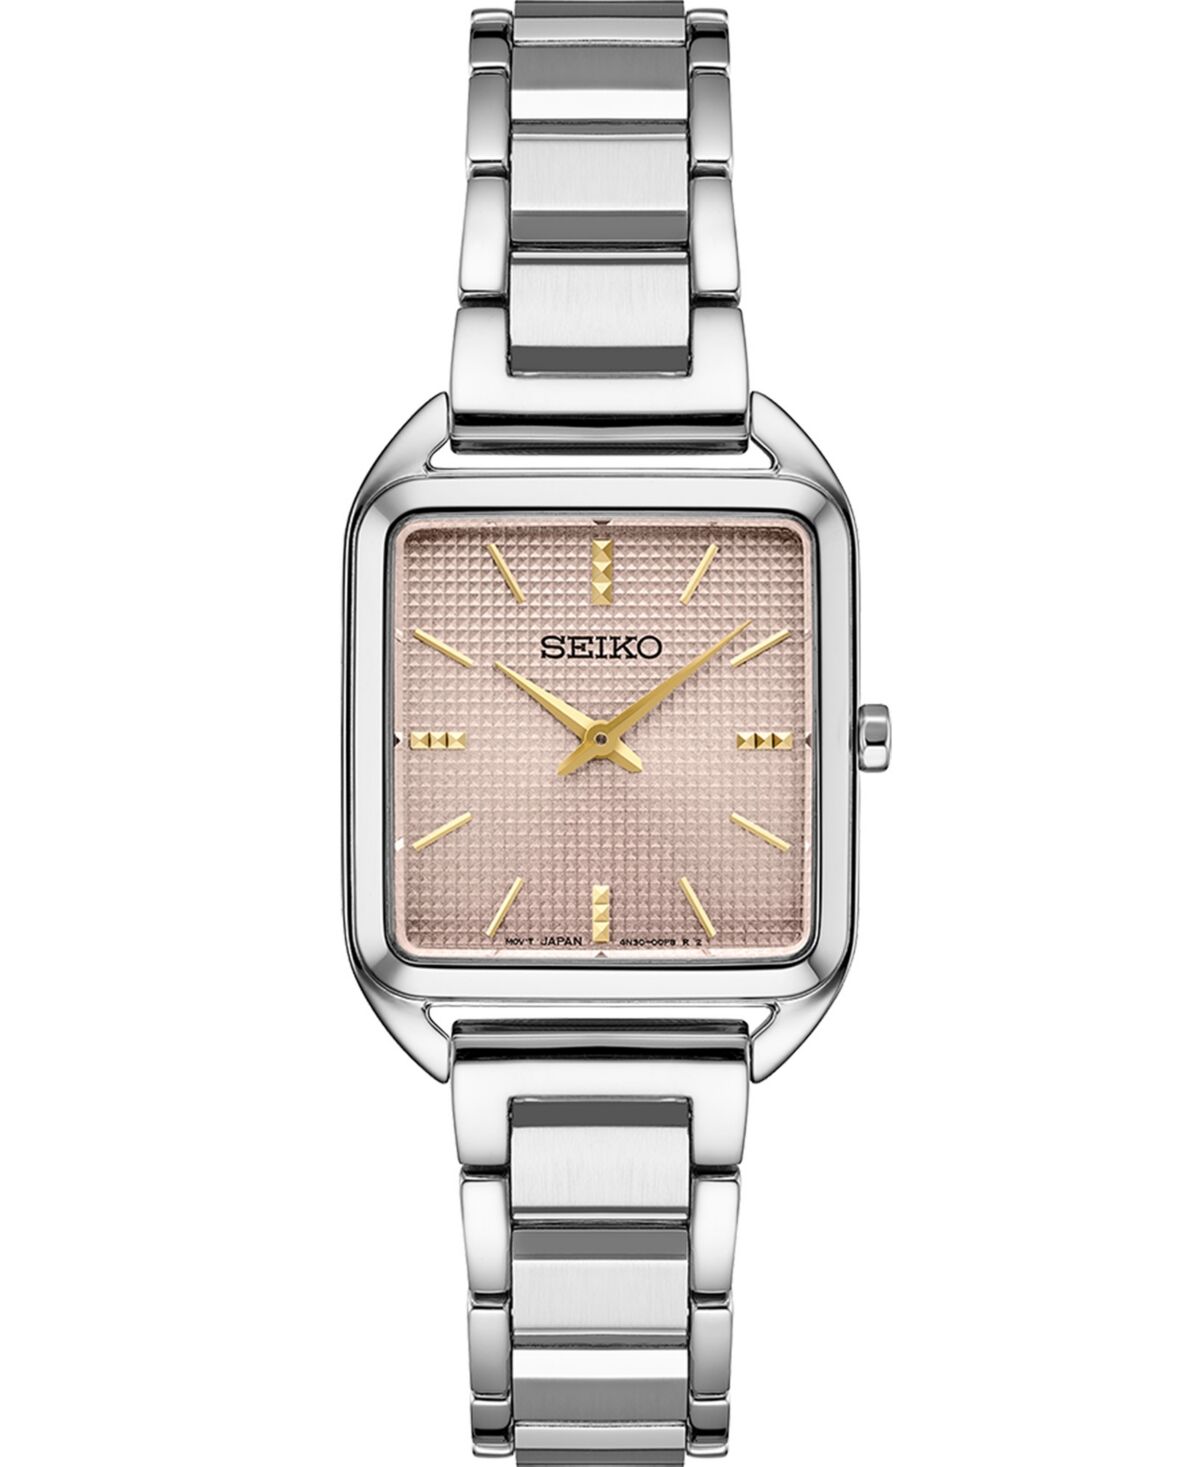 Seiko Women's Essentials Stainless Steel Bracelet Watch 26mm - Pink